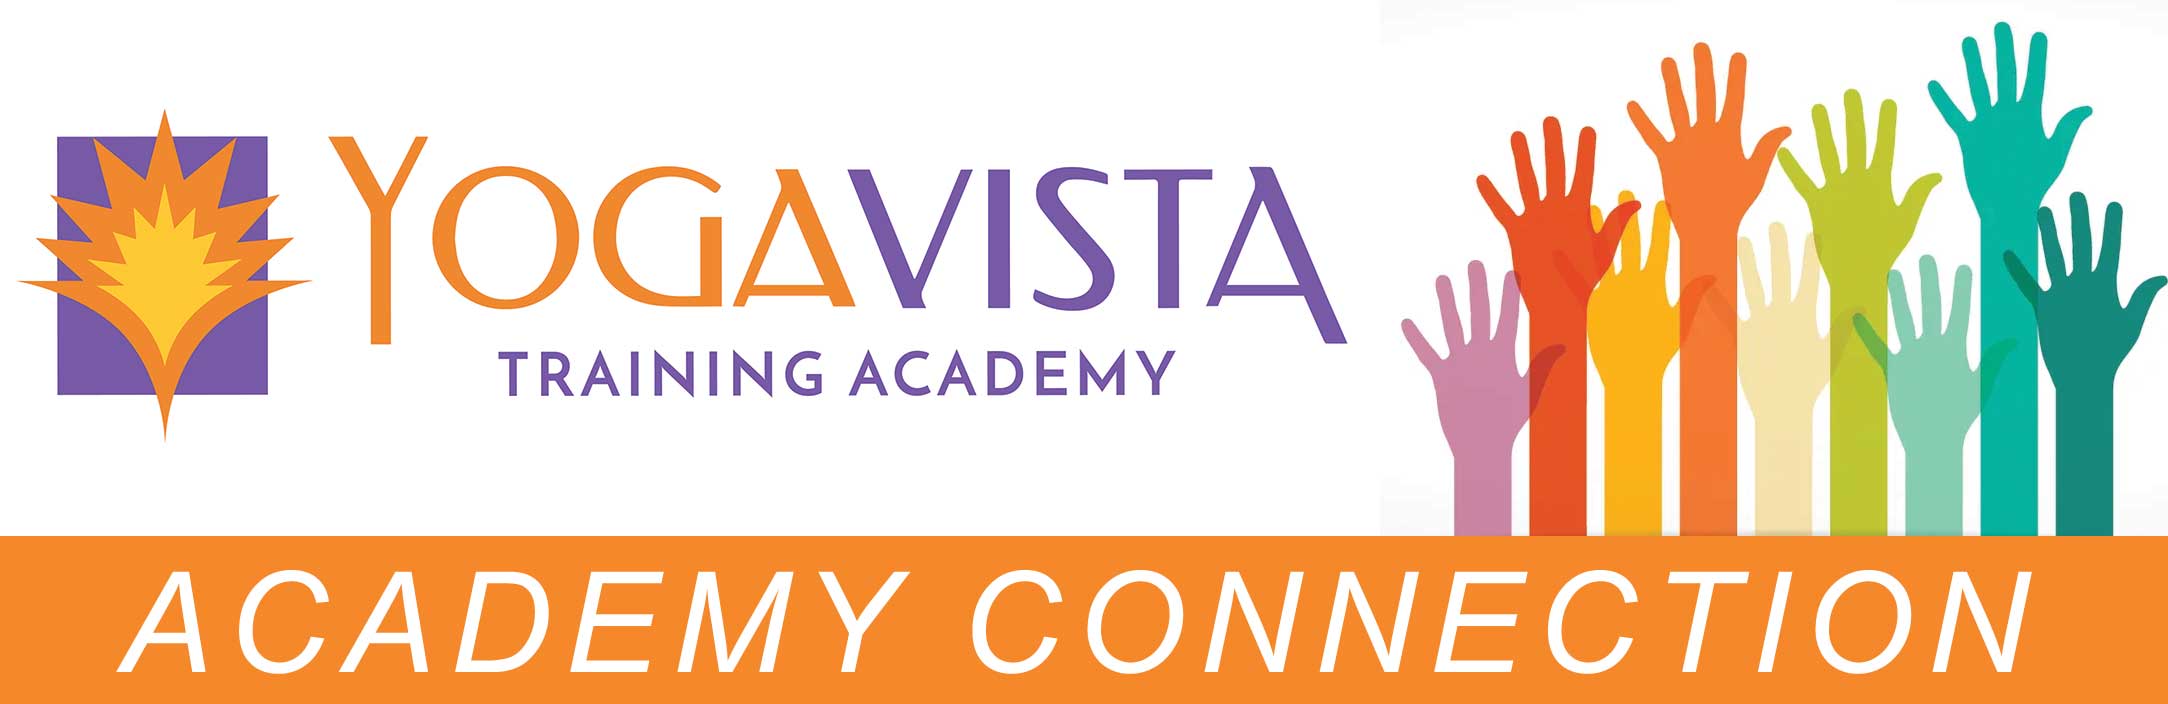 Yoga Vista Academy Connection